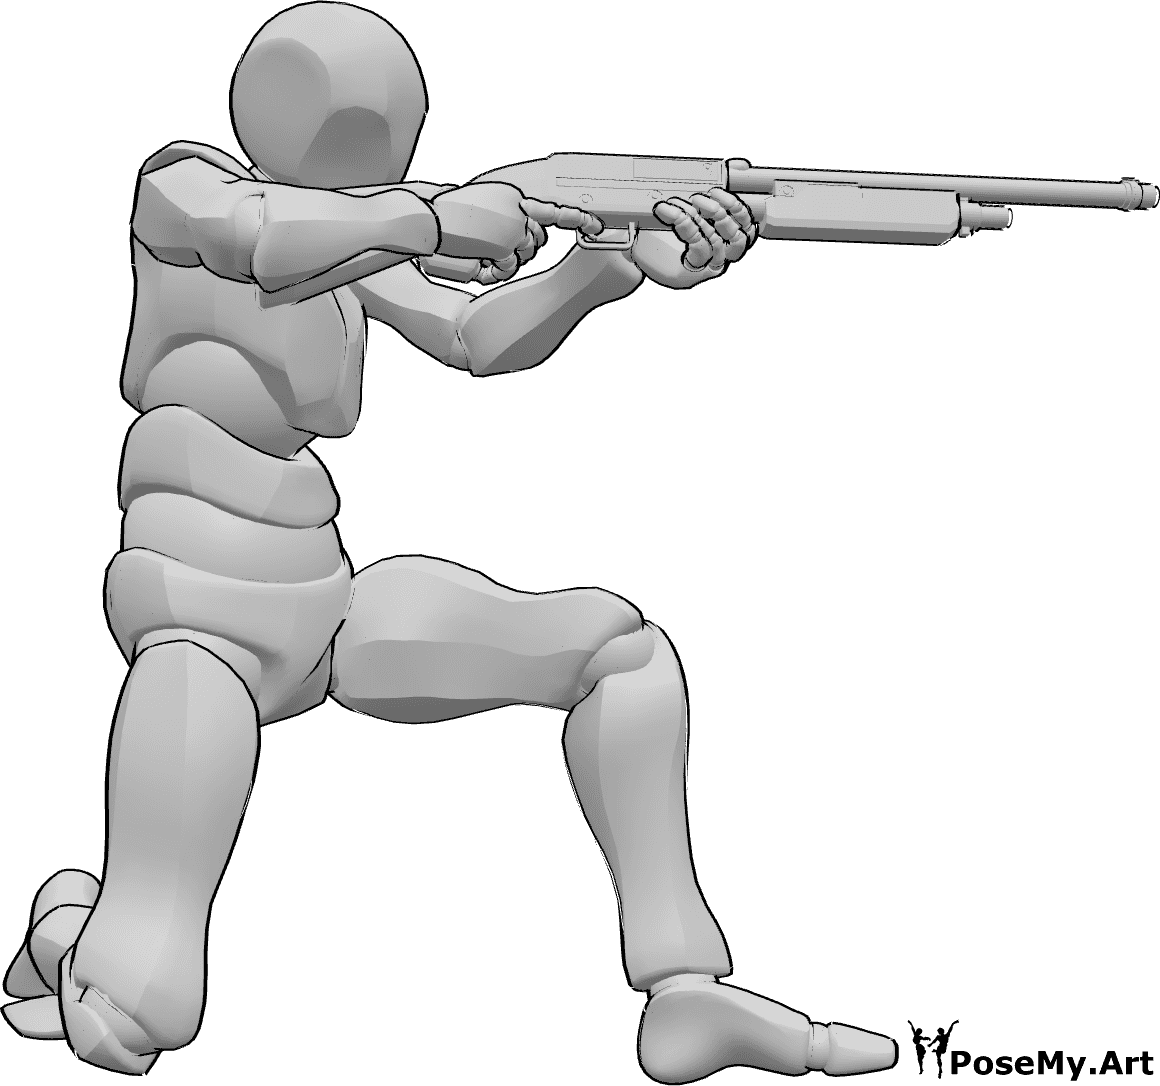 Référence des poses- Pose de tir au fusil de chasse - L'homme est agenouillé, tient le fusil de chasse à deux mains, vise et prend la pose.